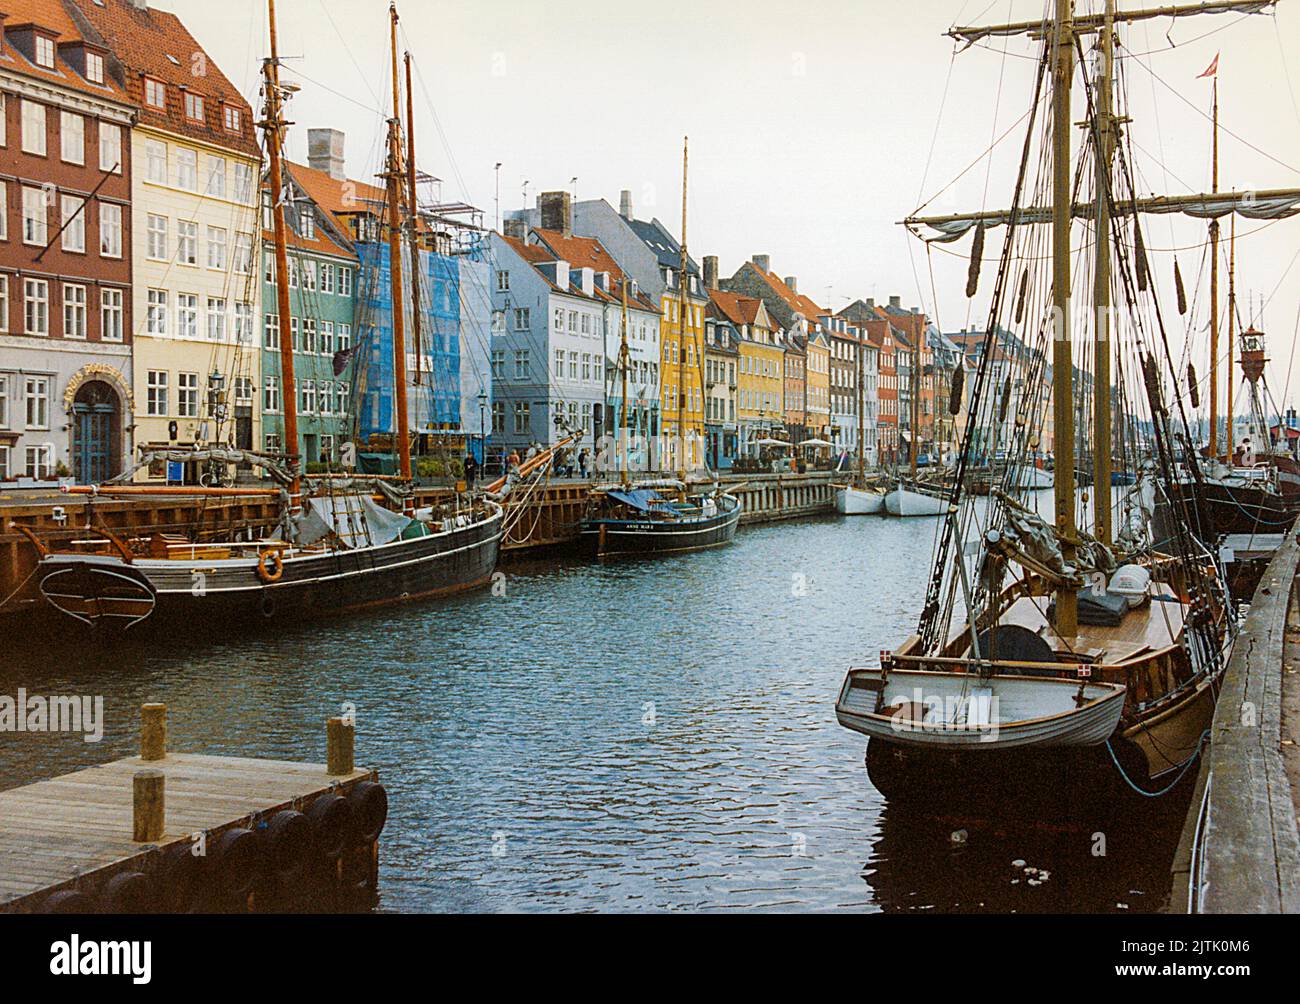 COPENHAGUE Nyhavn con sus pequeños cafés y bares a lo largo de la zona del puerto Foto de stock